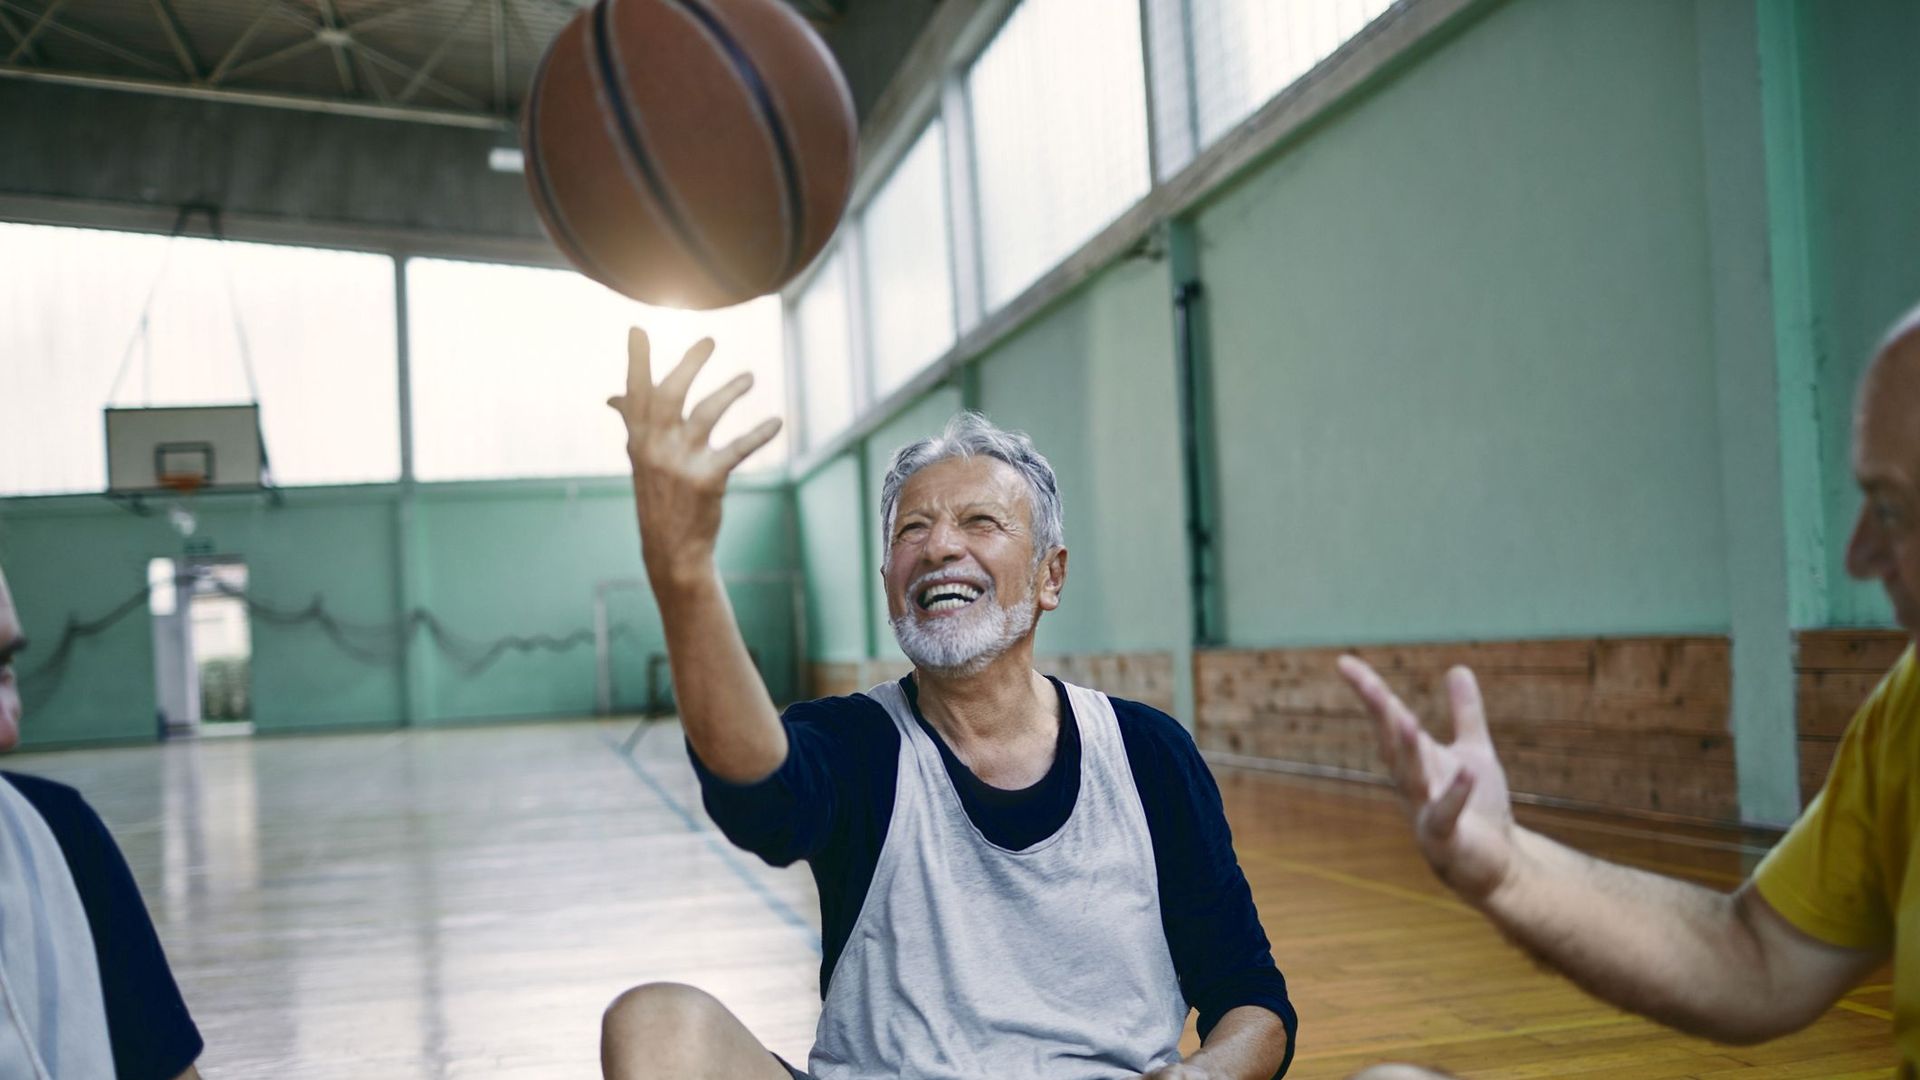 La pratique régulière du sport pourrait améliorer la santé cardiovasculaire à n'importe quel âge.